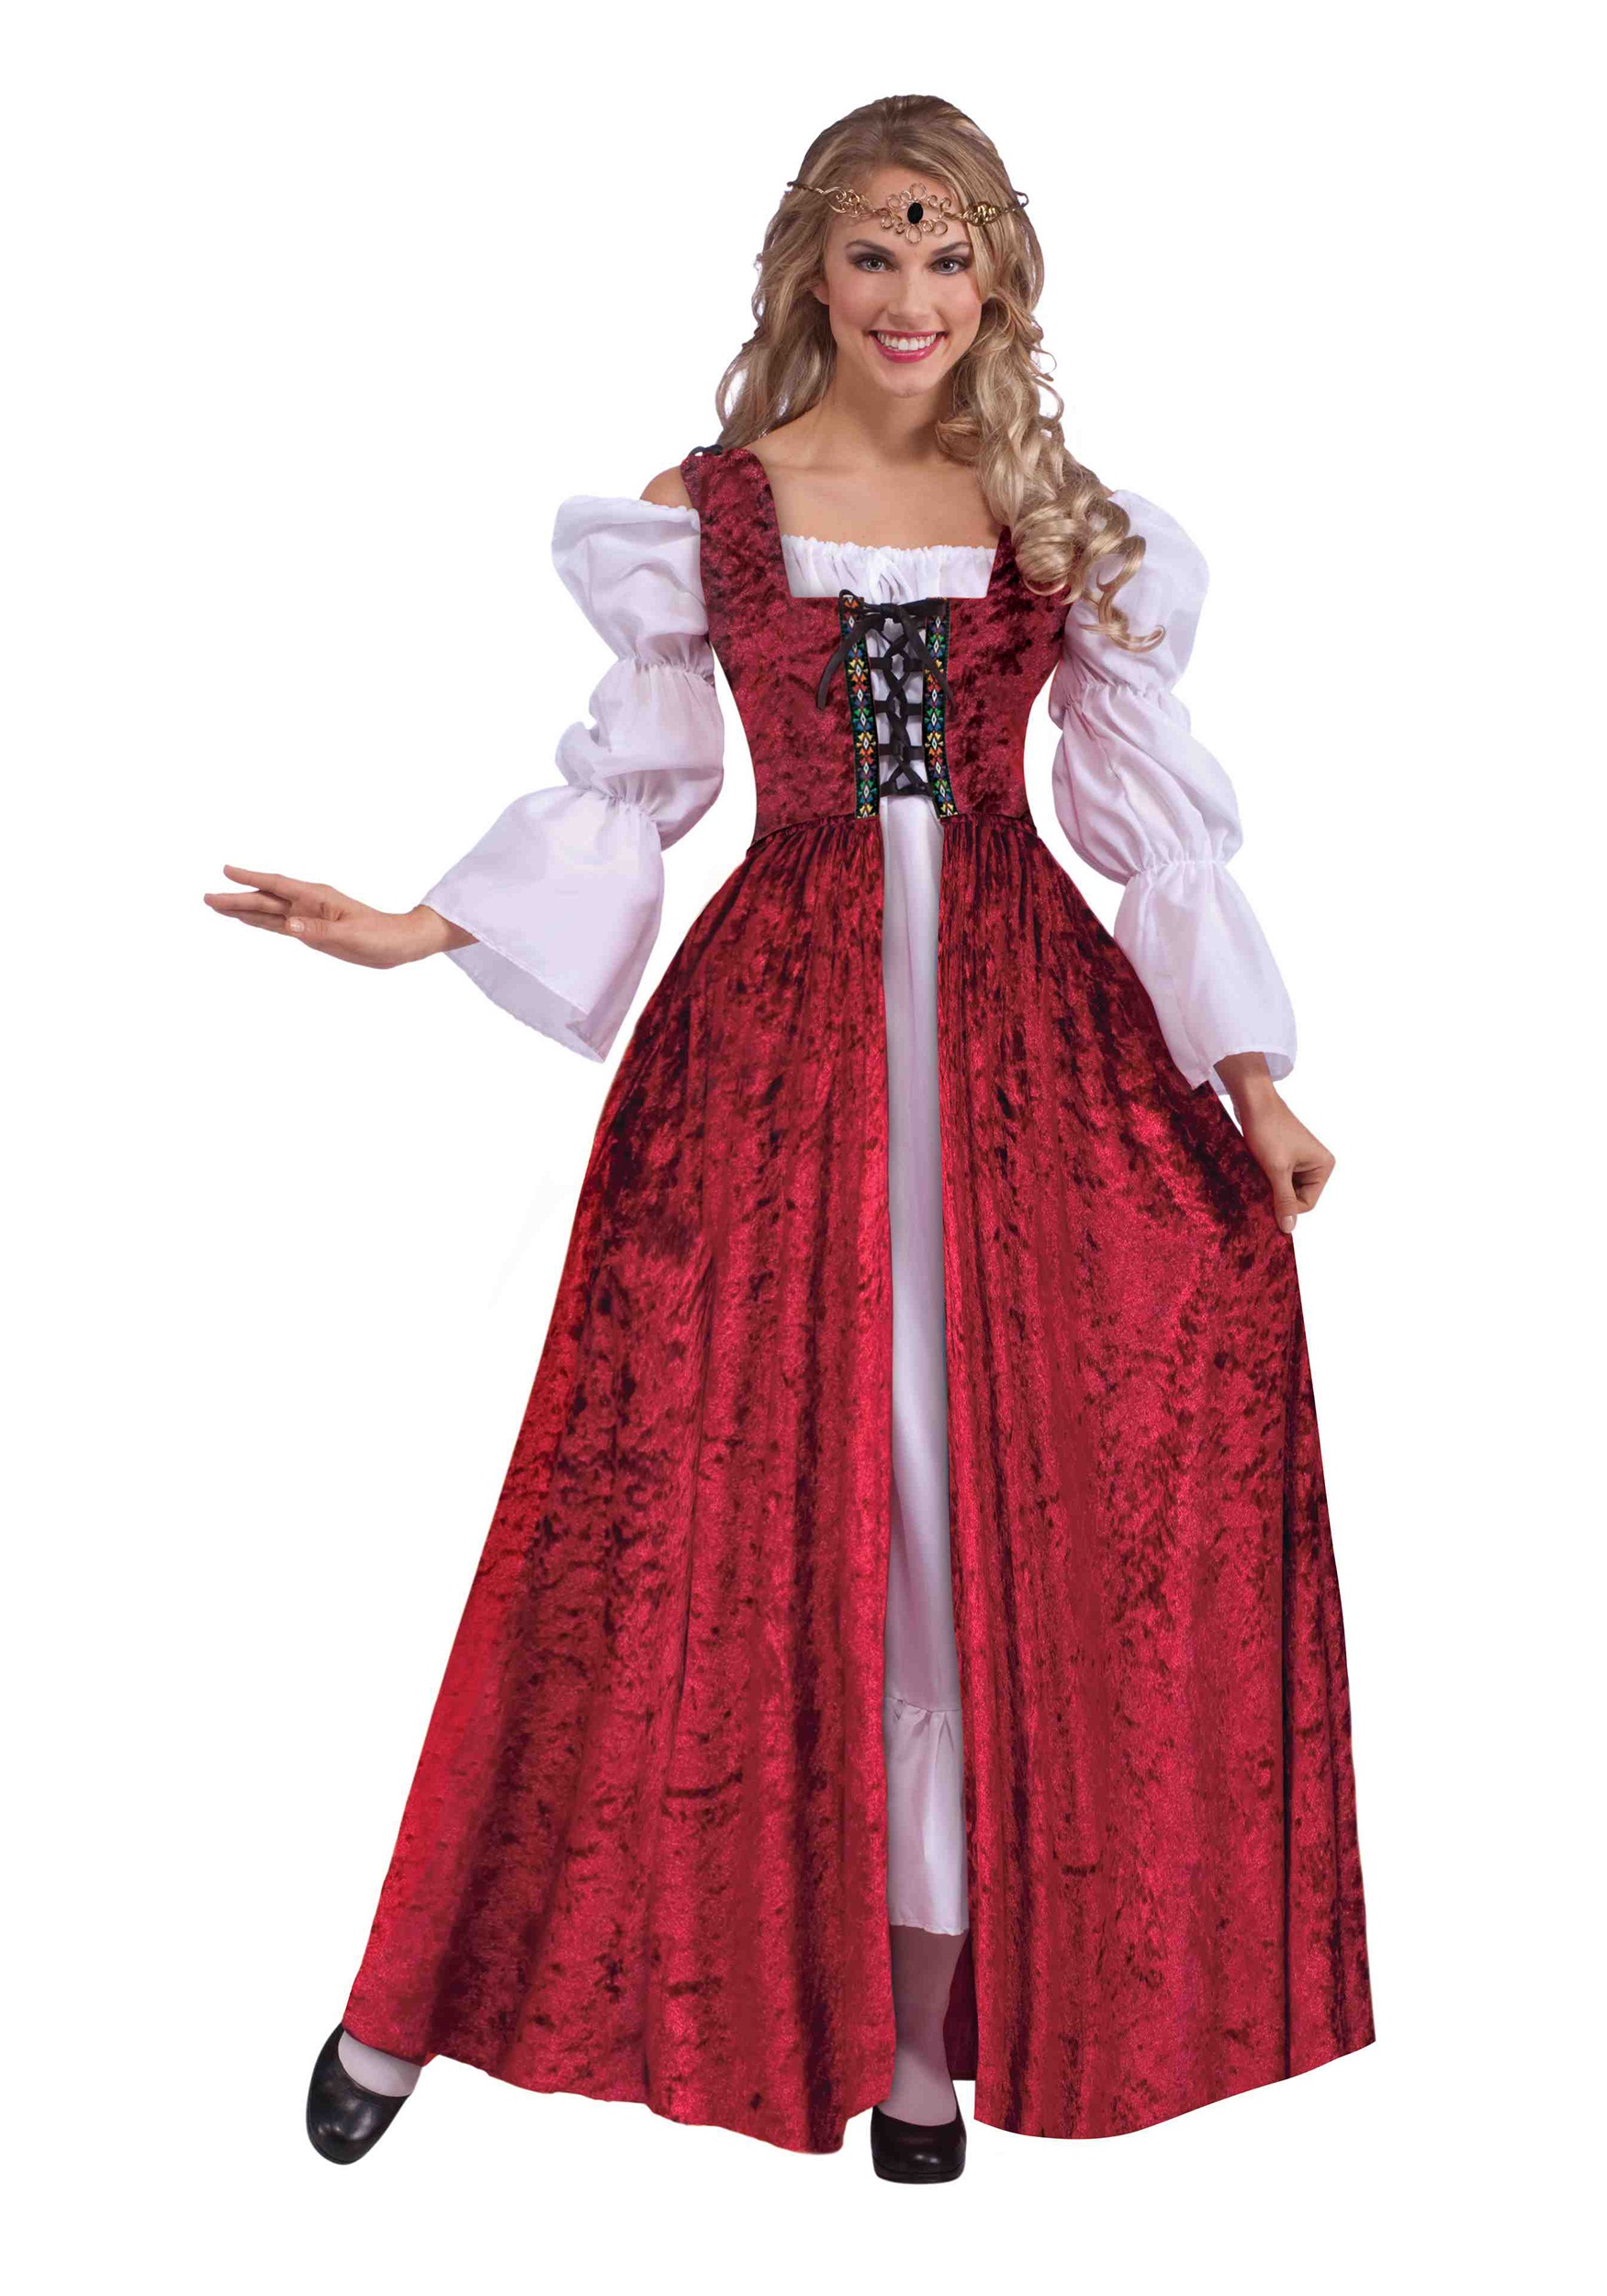 Ladies Purple Medieval Renaissance Costume Velvet Gown Fancy Dress Lady Outfits 